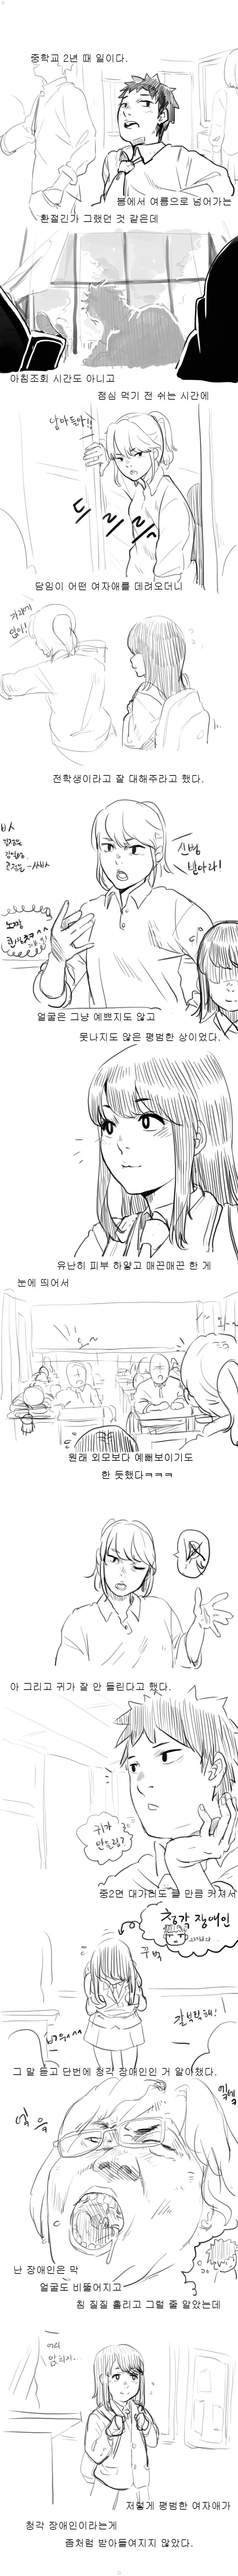 추억의 청각장애인 처자애랑 짝이었던 썰만화 ㅎㅎㅎㅎㅎ 이미지 #1